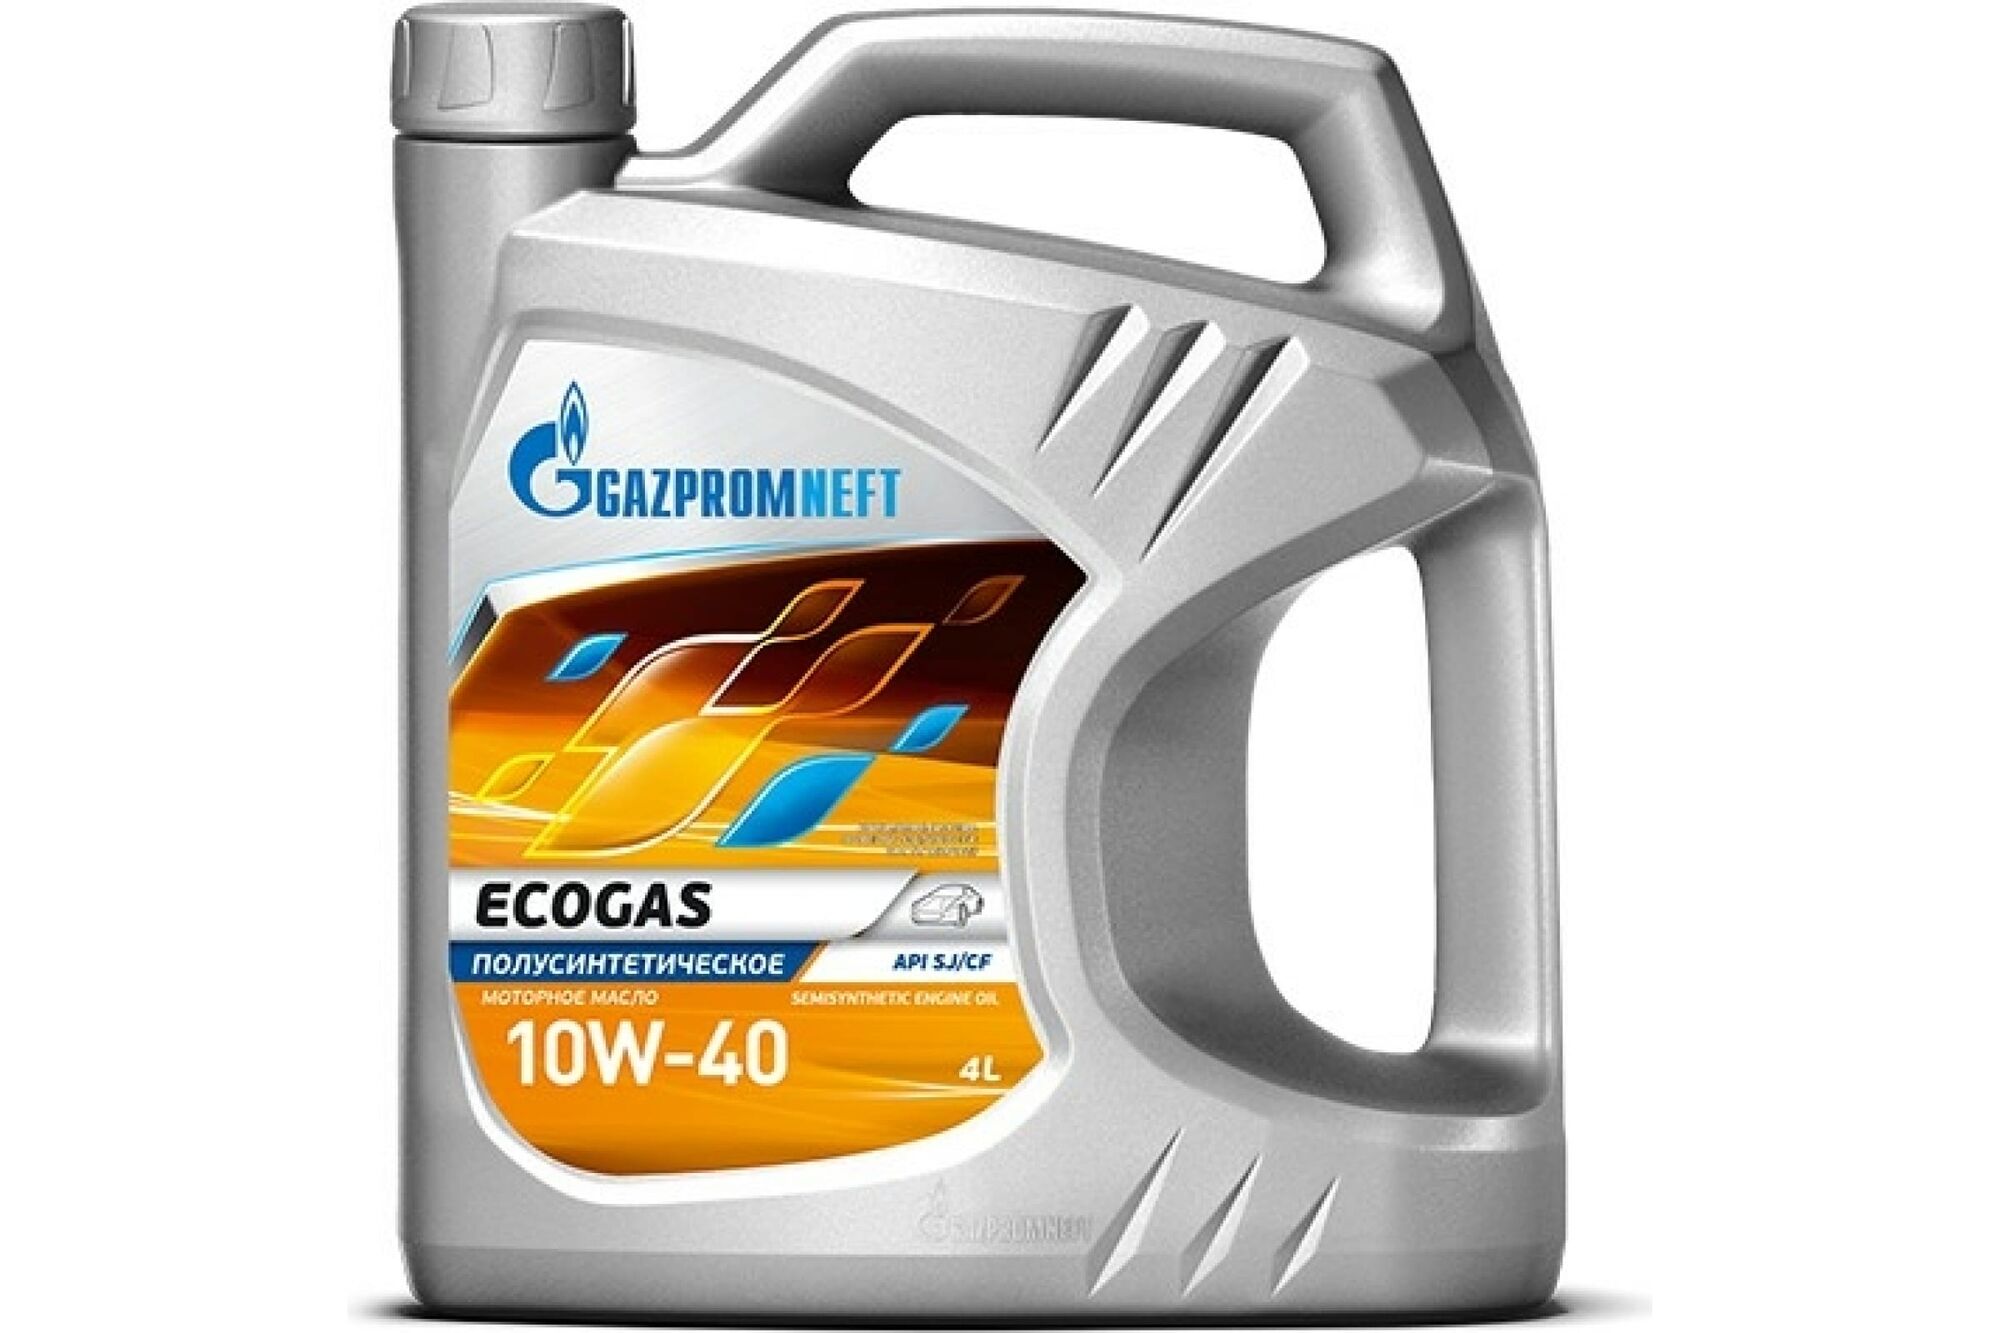 Моторное масло Gazpromneft Ecogas 10W-40, 4 л 253142151